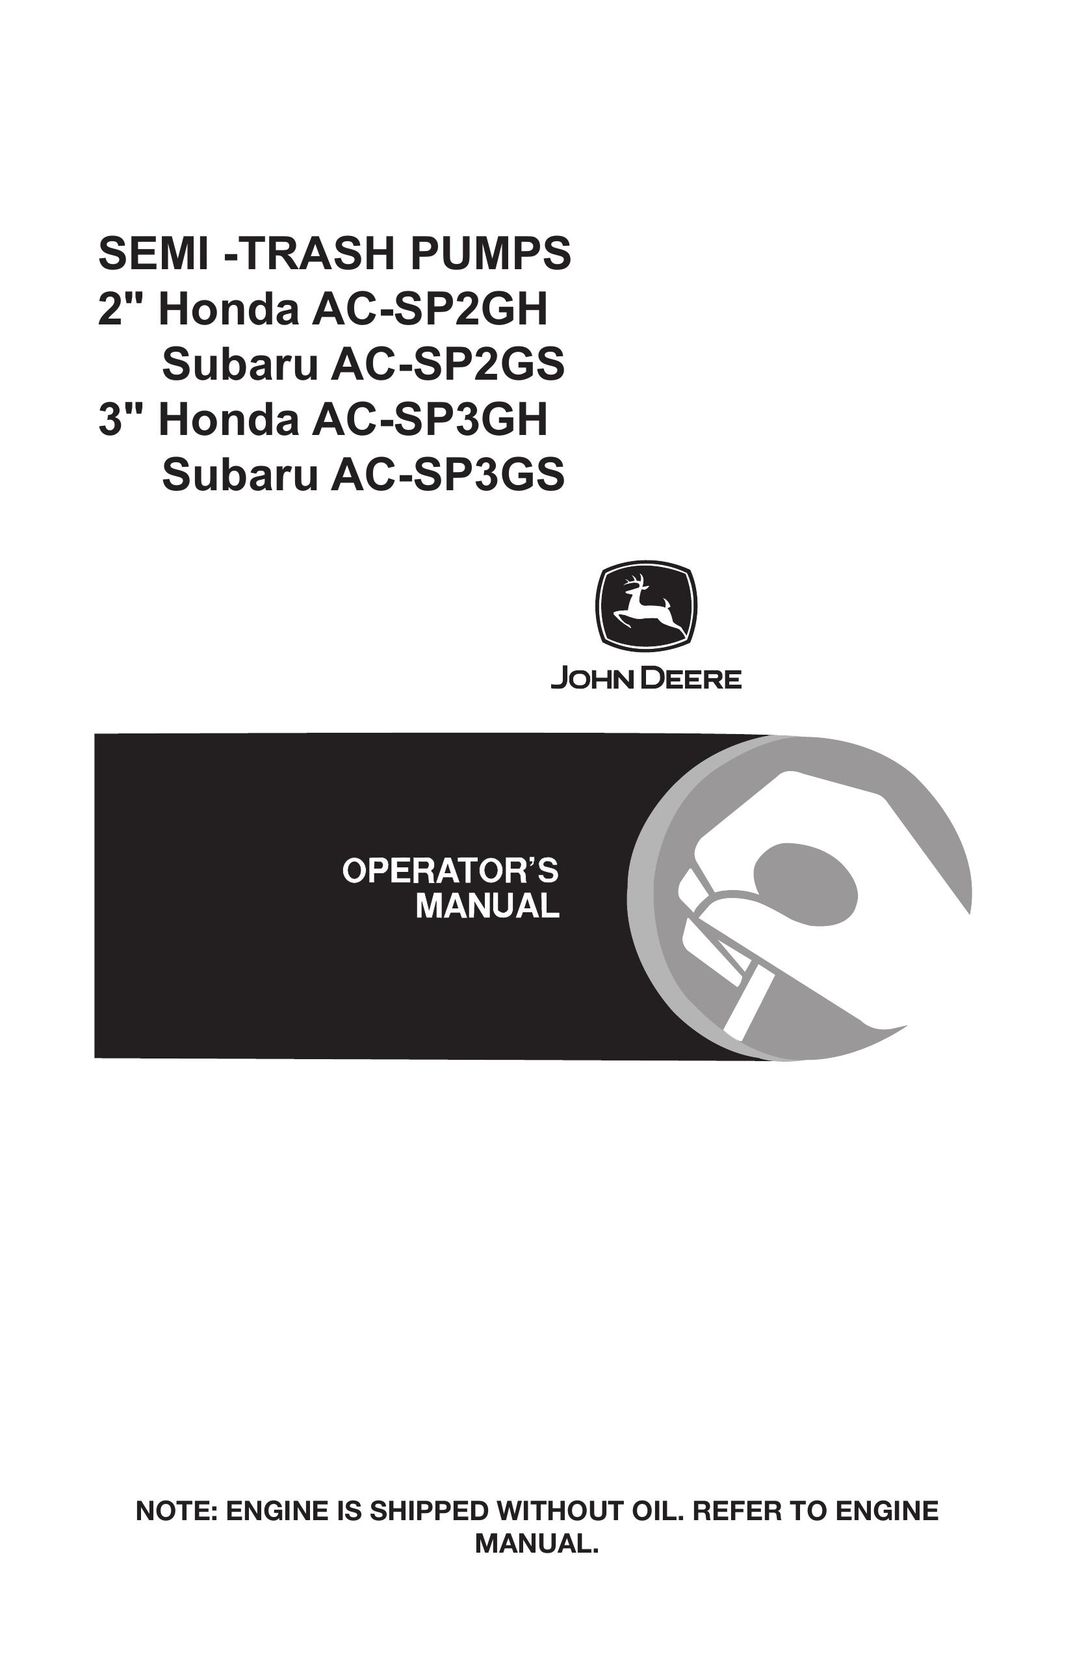 John Deere AC-SP3GS Water Pump User Manual